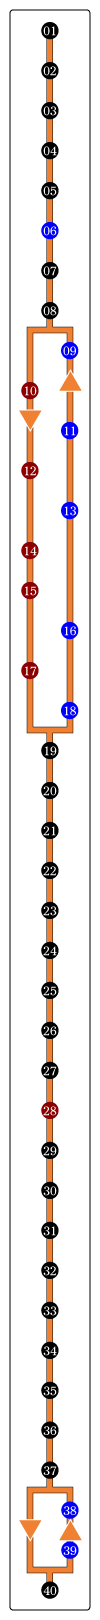 パリのバス27番　バス路線図